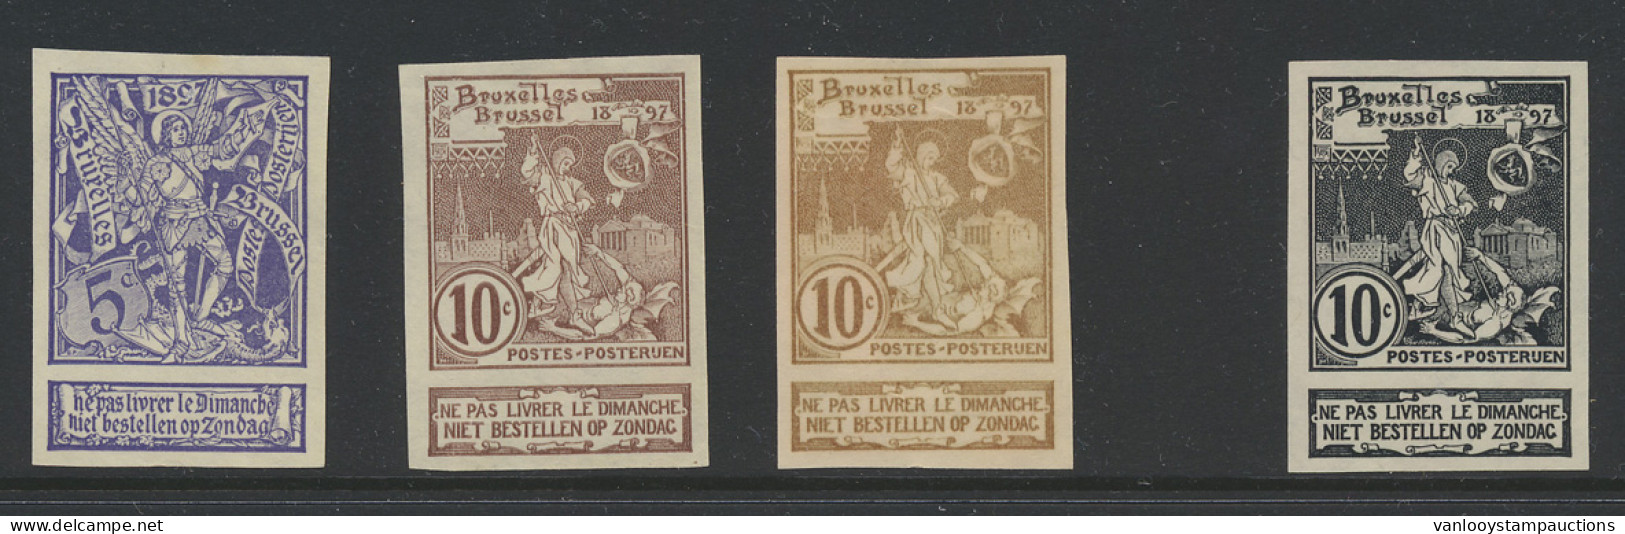 N° 71/73 Expo Brussel, De Serie Ongetand + Proefdruk 10c. In Het Zwart Op Dun Papier, Zm (OBP ++€60) - 1894-1896 Expositions